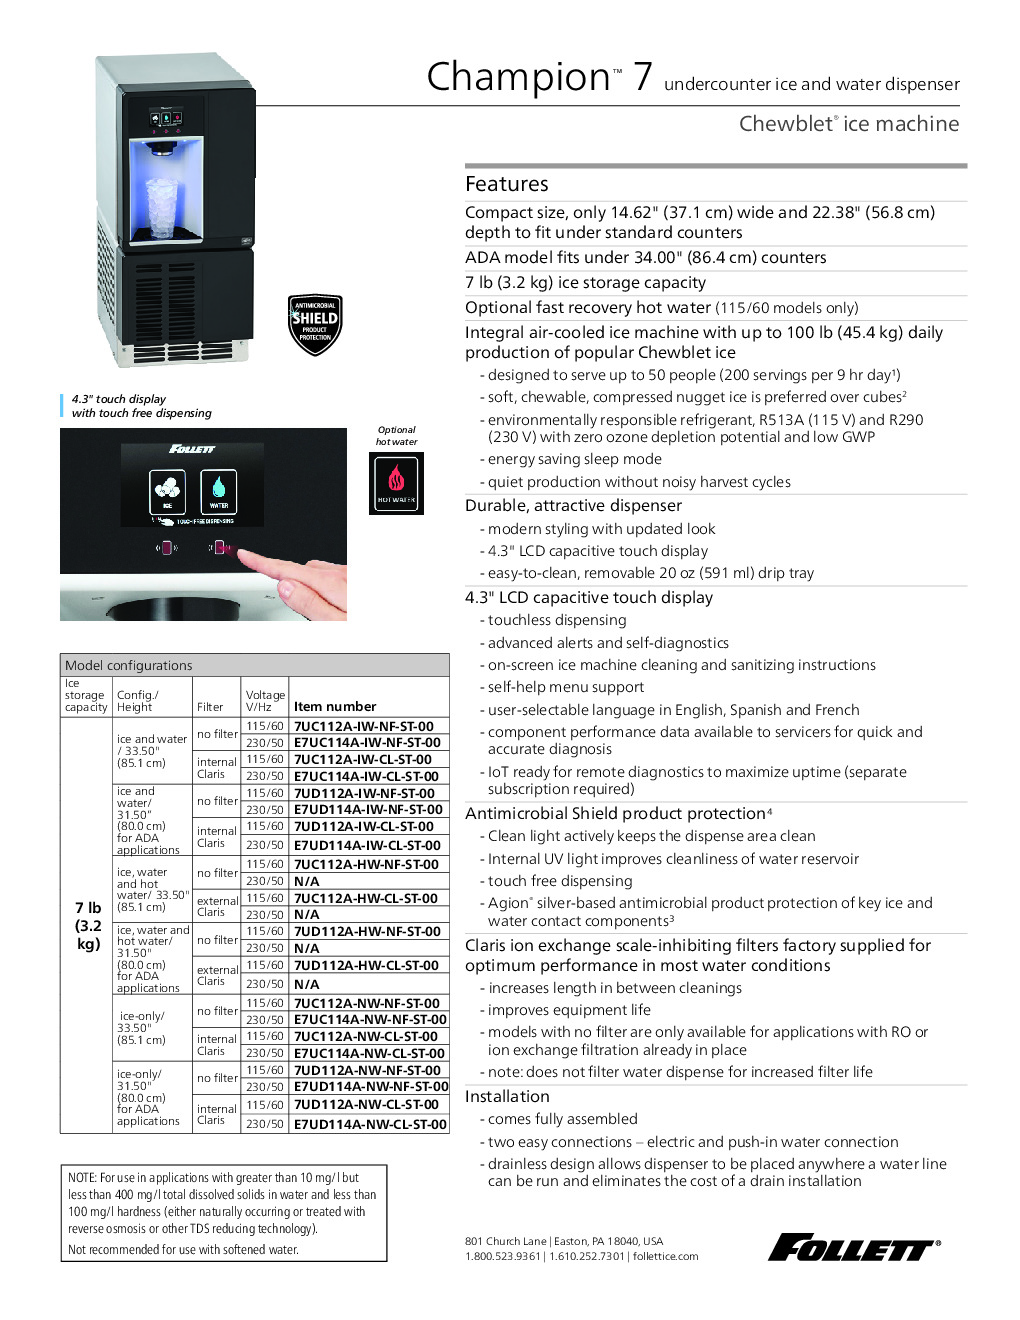 Follett 7UC112A-NW-NF-ST-00 Ice Dispenser